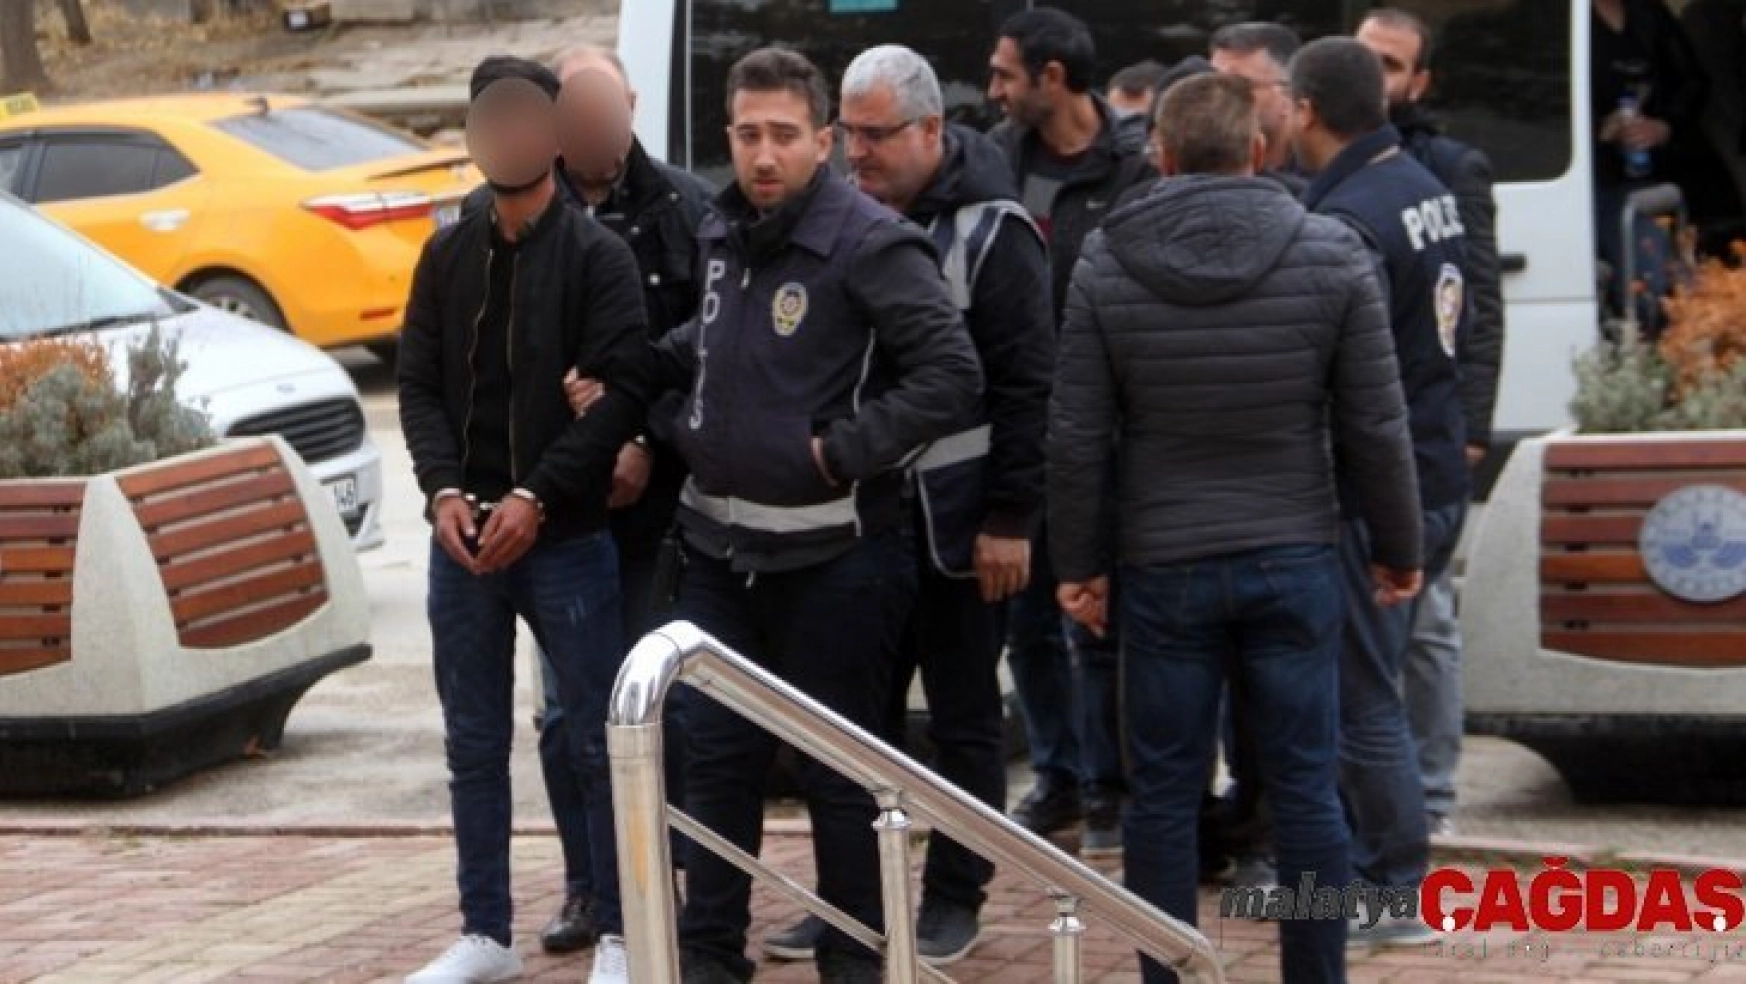 Elazığ'da sosyal medyada terör propagandası operasyonu: 6 gözaltı